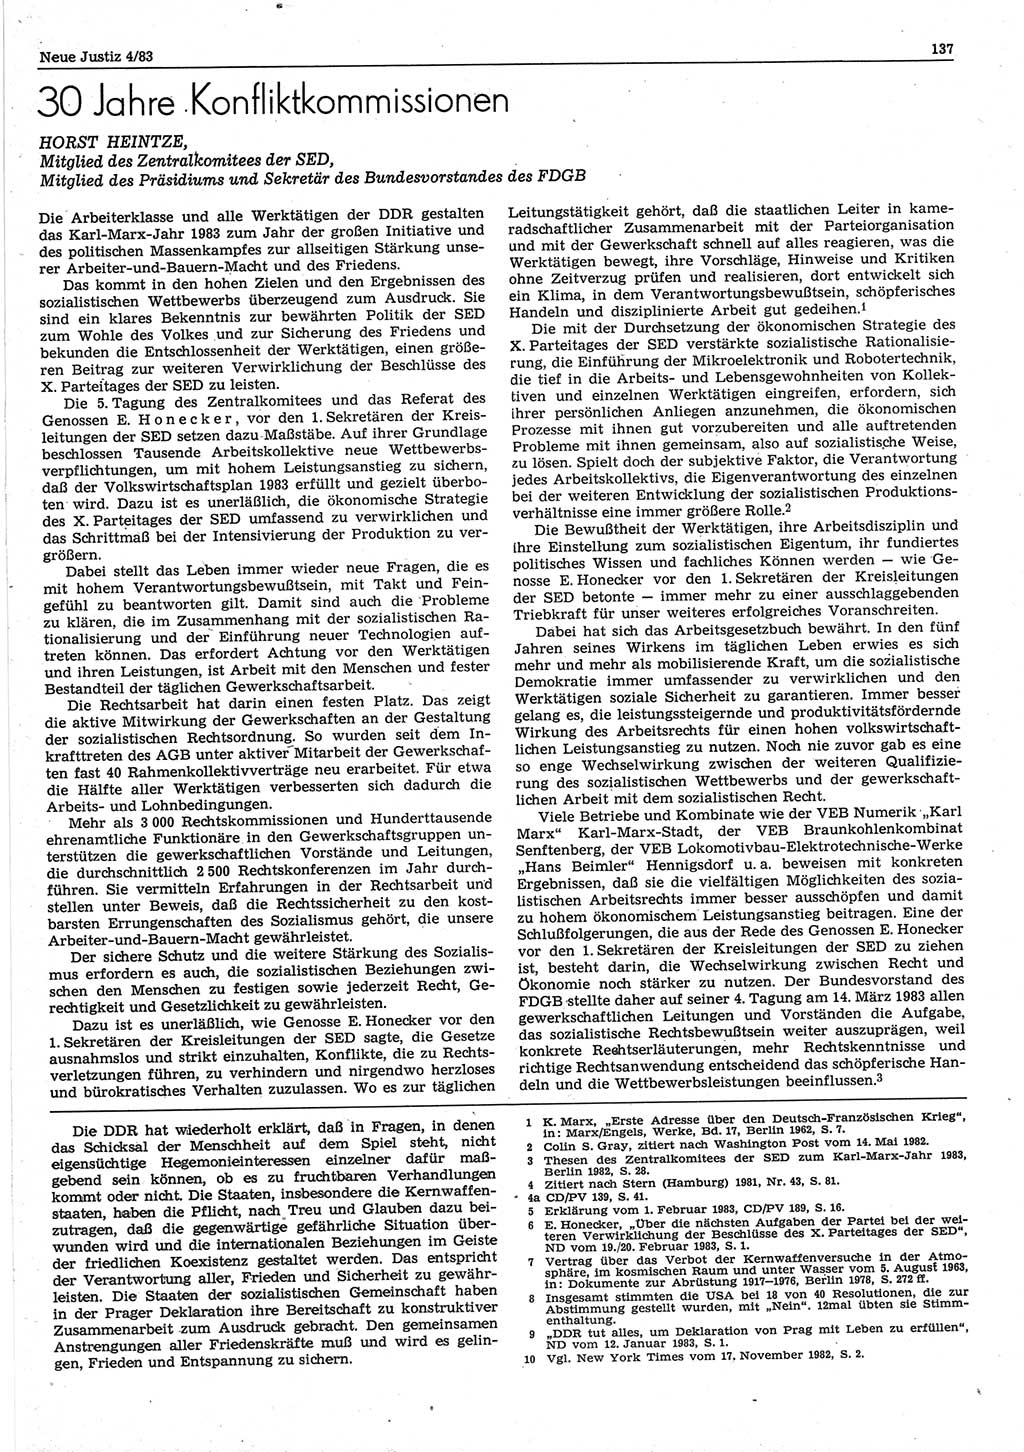 Neue Justiz (NJ), Zeitschrift für sozialistisches Recht und Gesetzlichkeit [Deutsche Demokratische Republik (DDR)], 37. Jahrgang 1983, Seite 137 (NJ DDR 1983, S. 137)